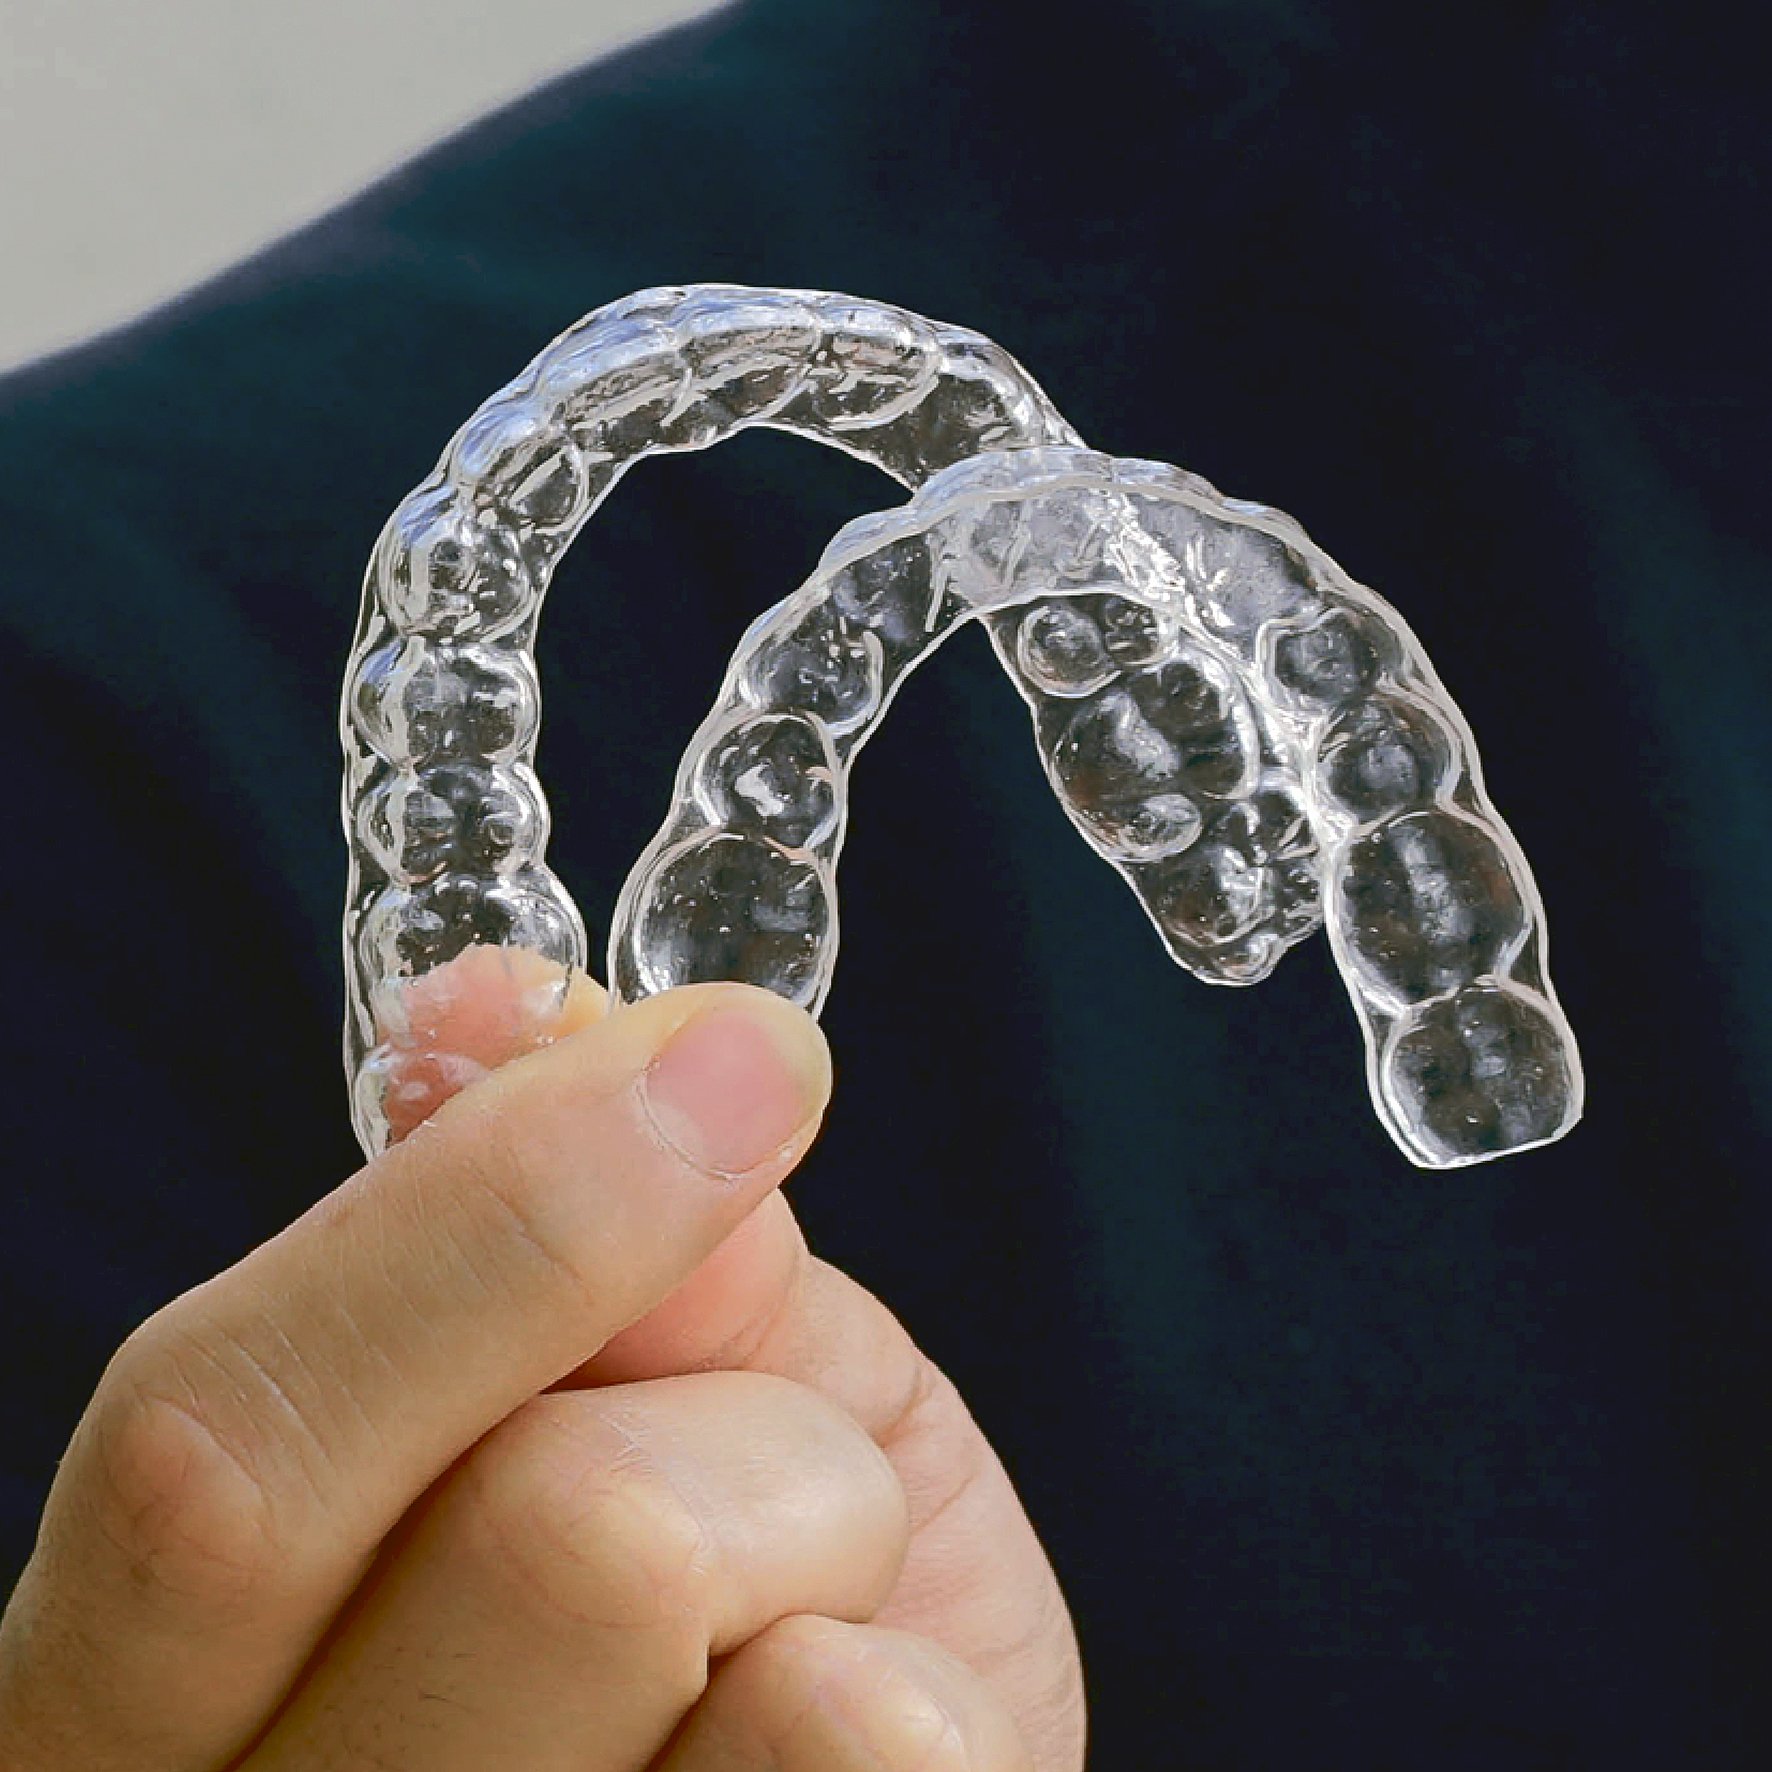 Imagen de ortodoncia invisible, uno de los tratamientos de ortodoncia más demandados.